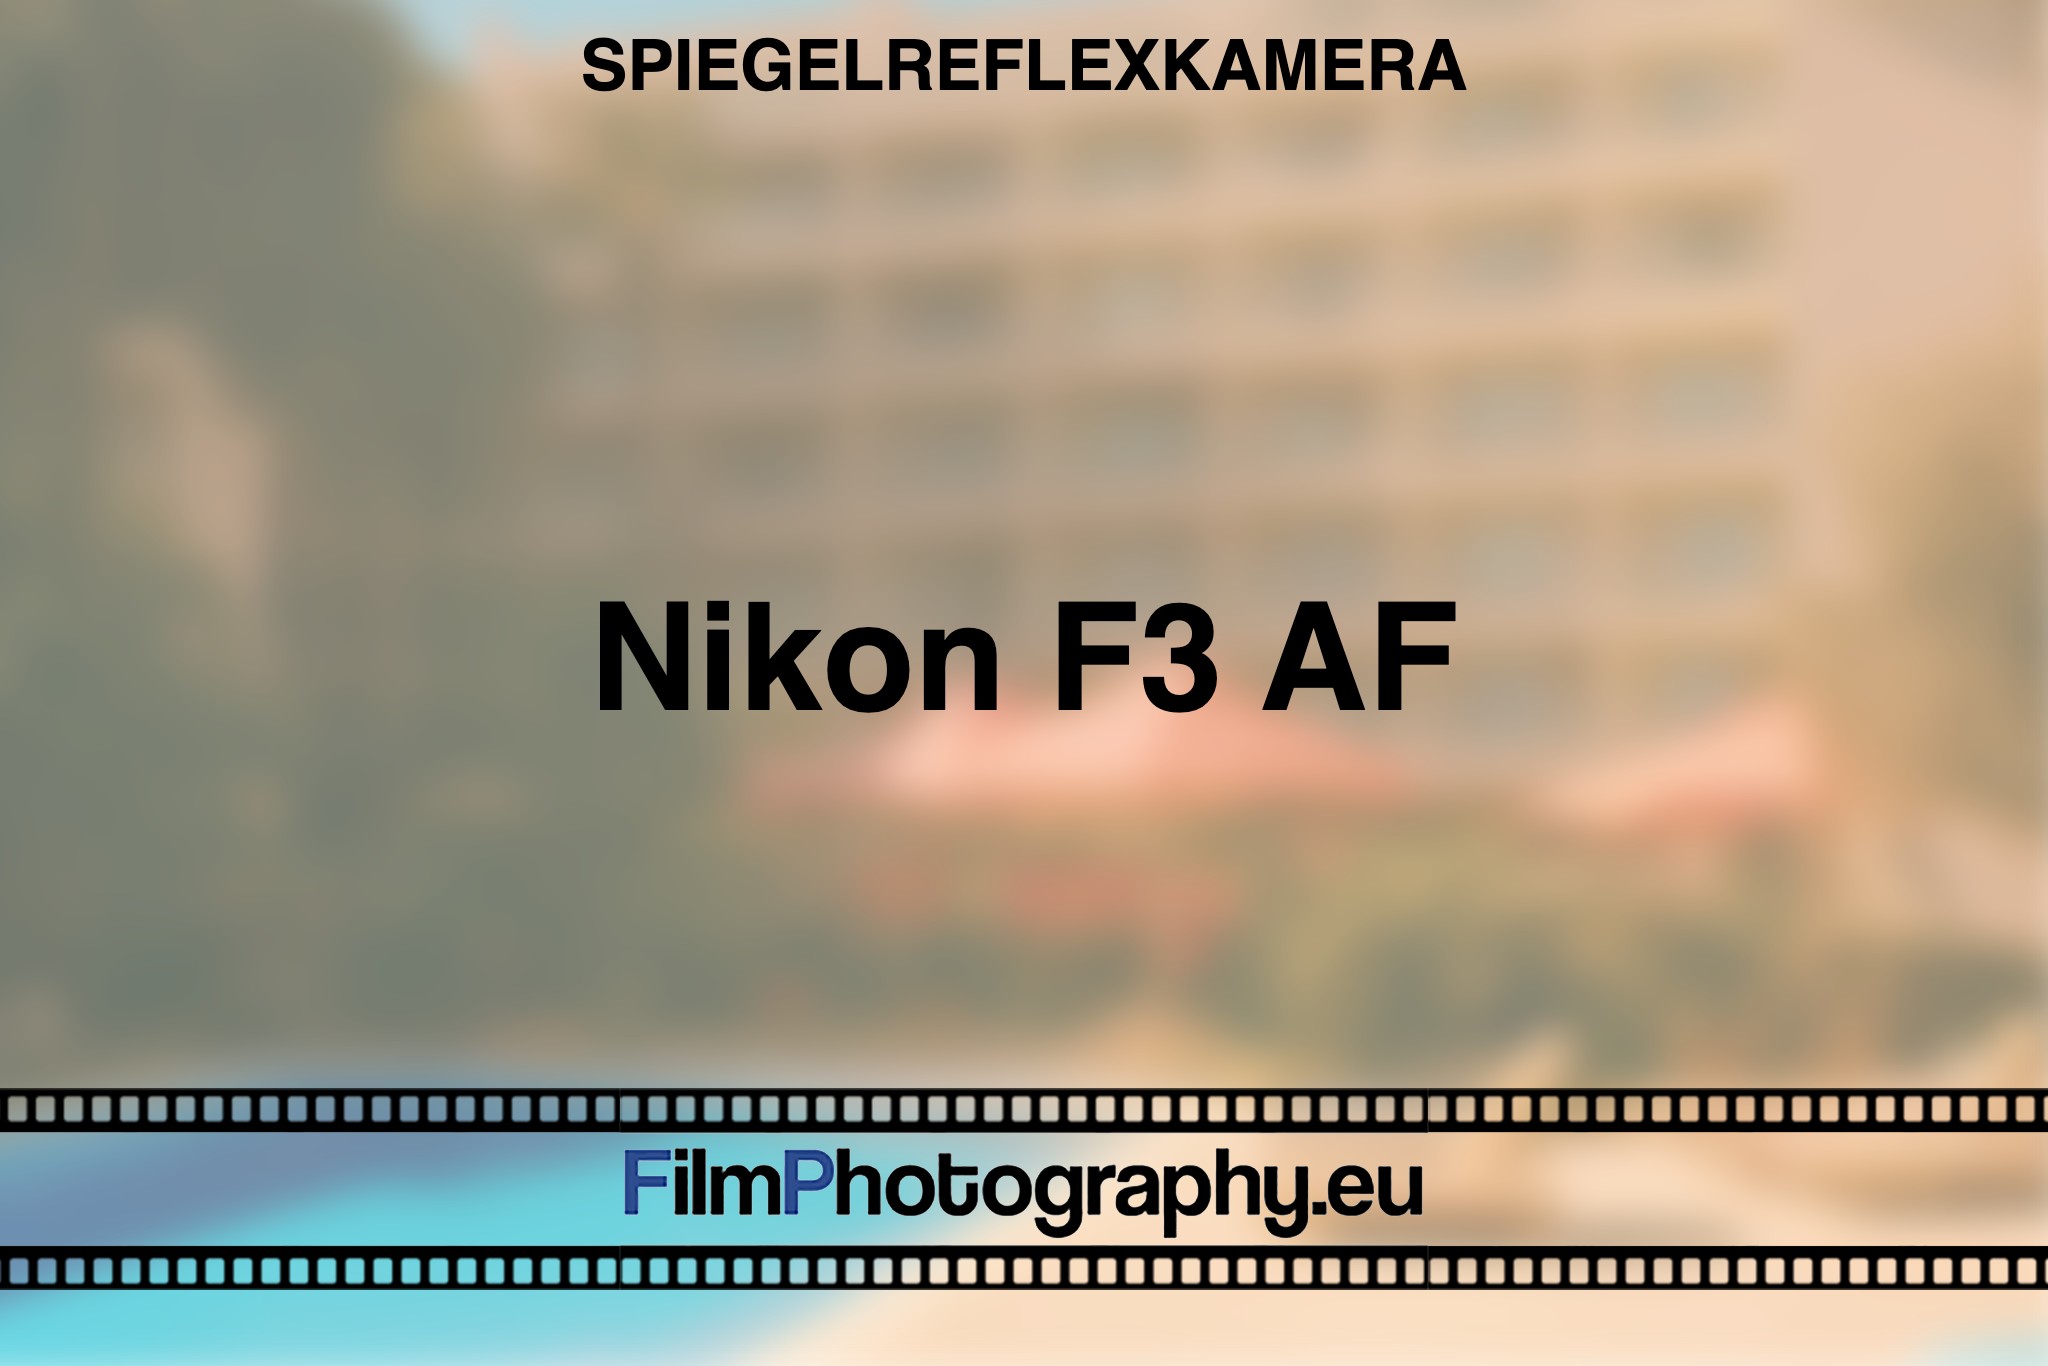 nikon-f3-af-spiegelreflexkamera-bnv